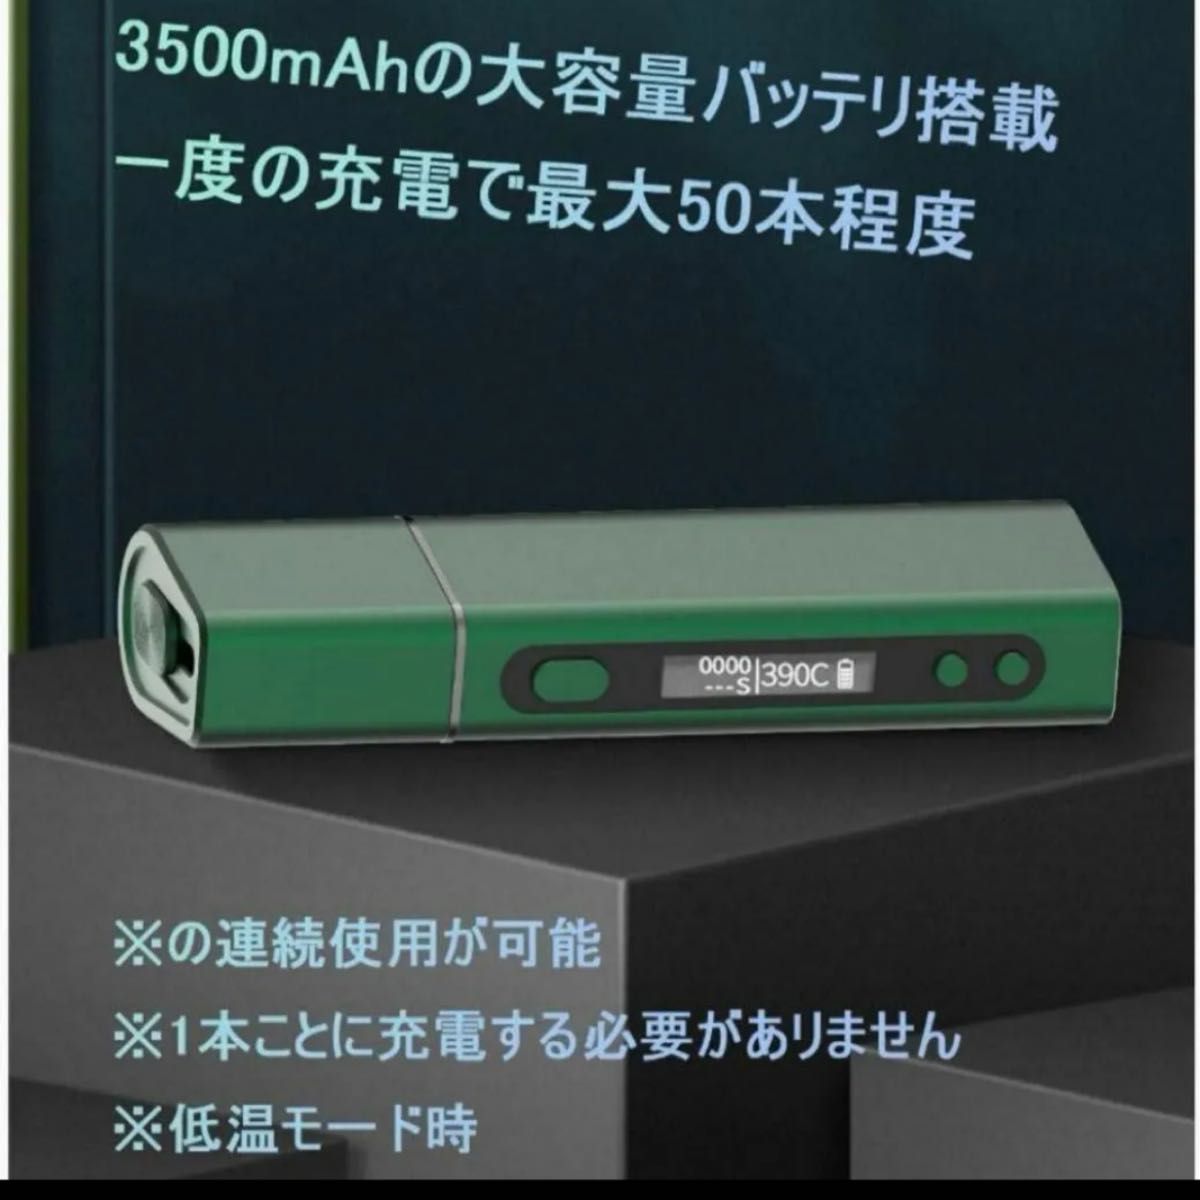 【現品限り】電子タバコ 互換機 本体 Pluscig S9 加熱式タバコ人気 禁煙